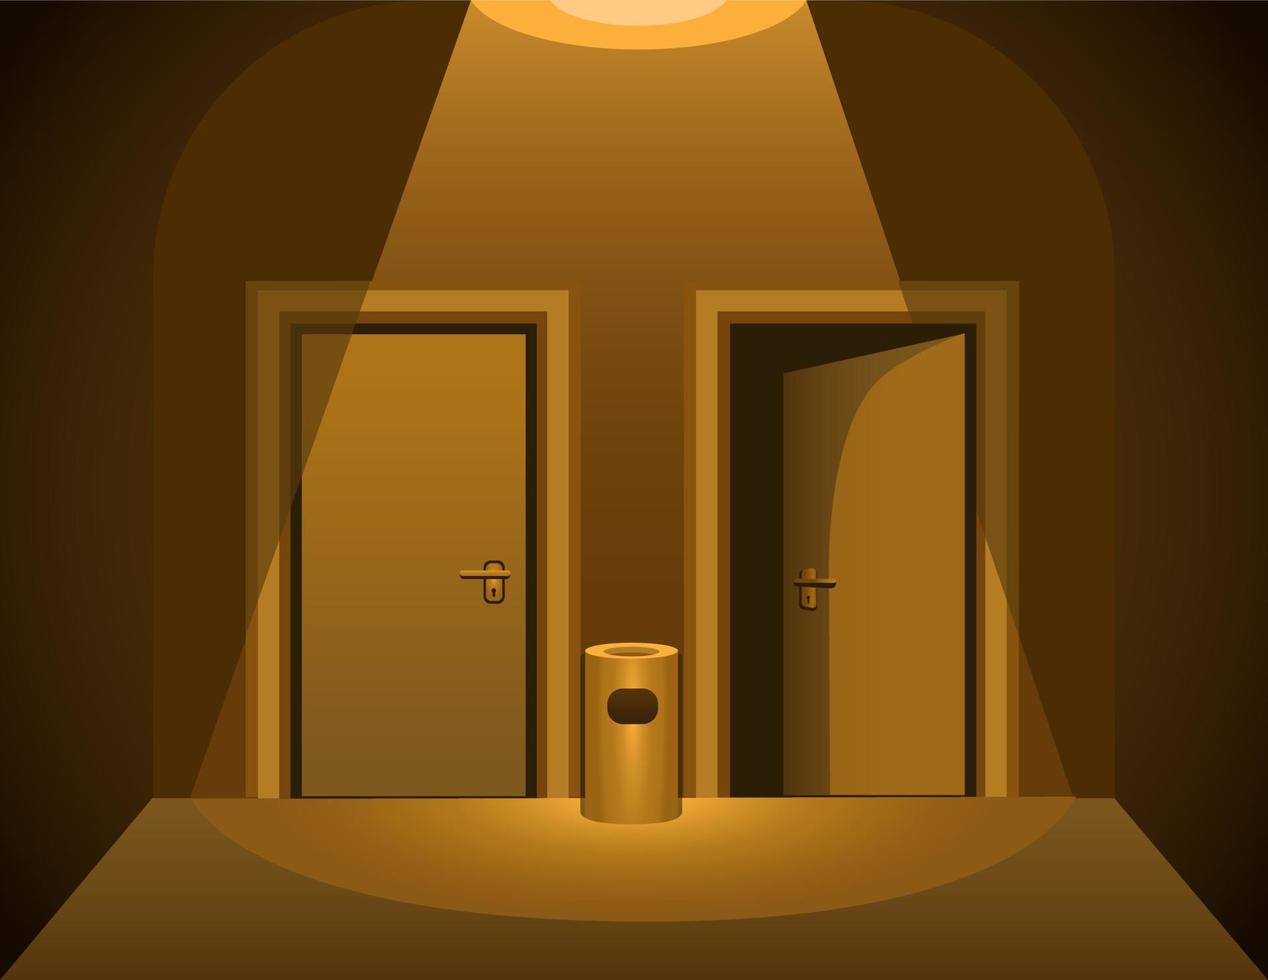 twee deur donker kamer. toilet of hotel kamer verschrikking tafereel achtergrond illustratie vector